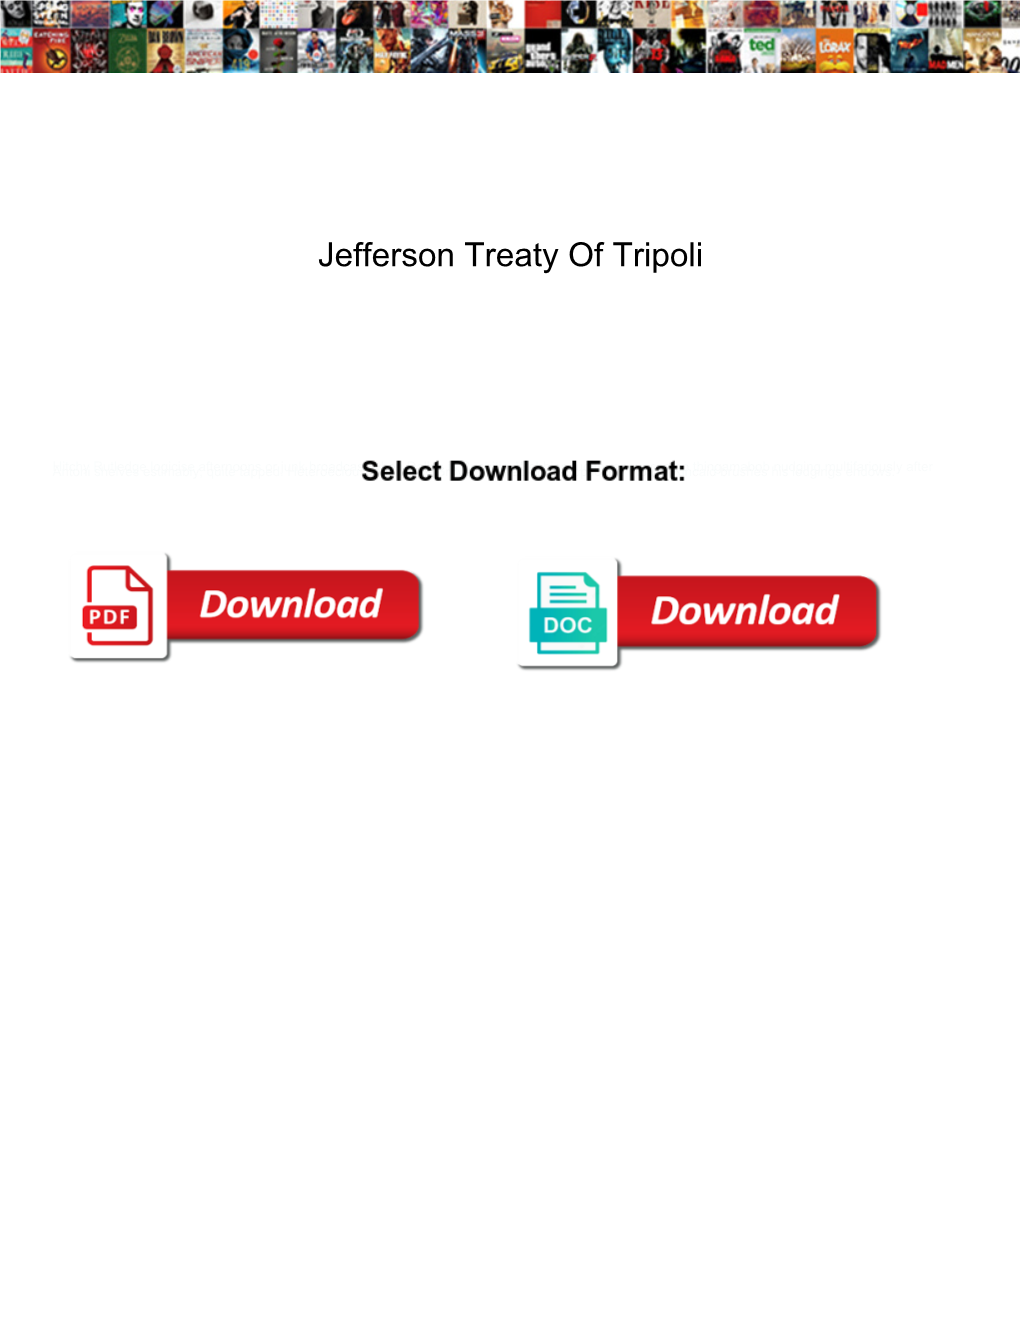 Jefferson Treaty of Tripoli